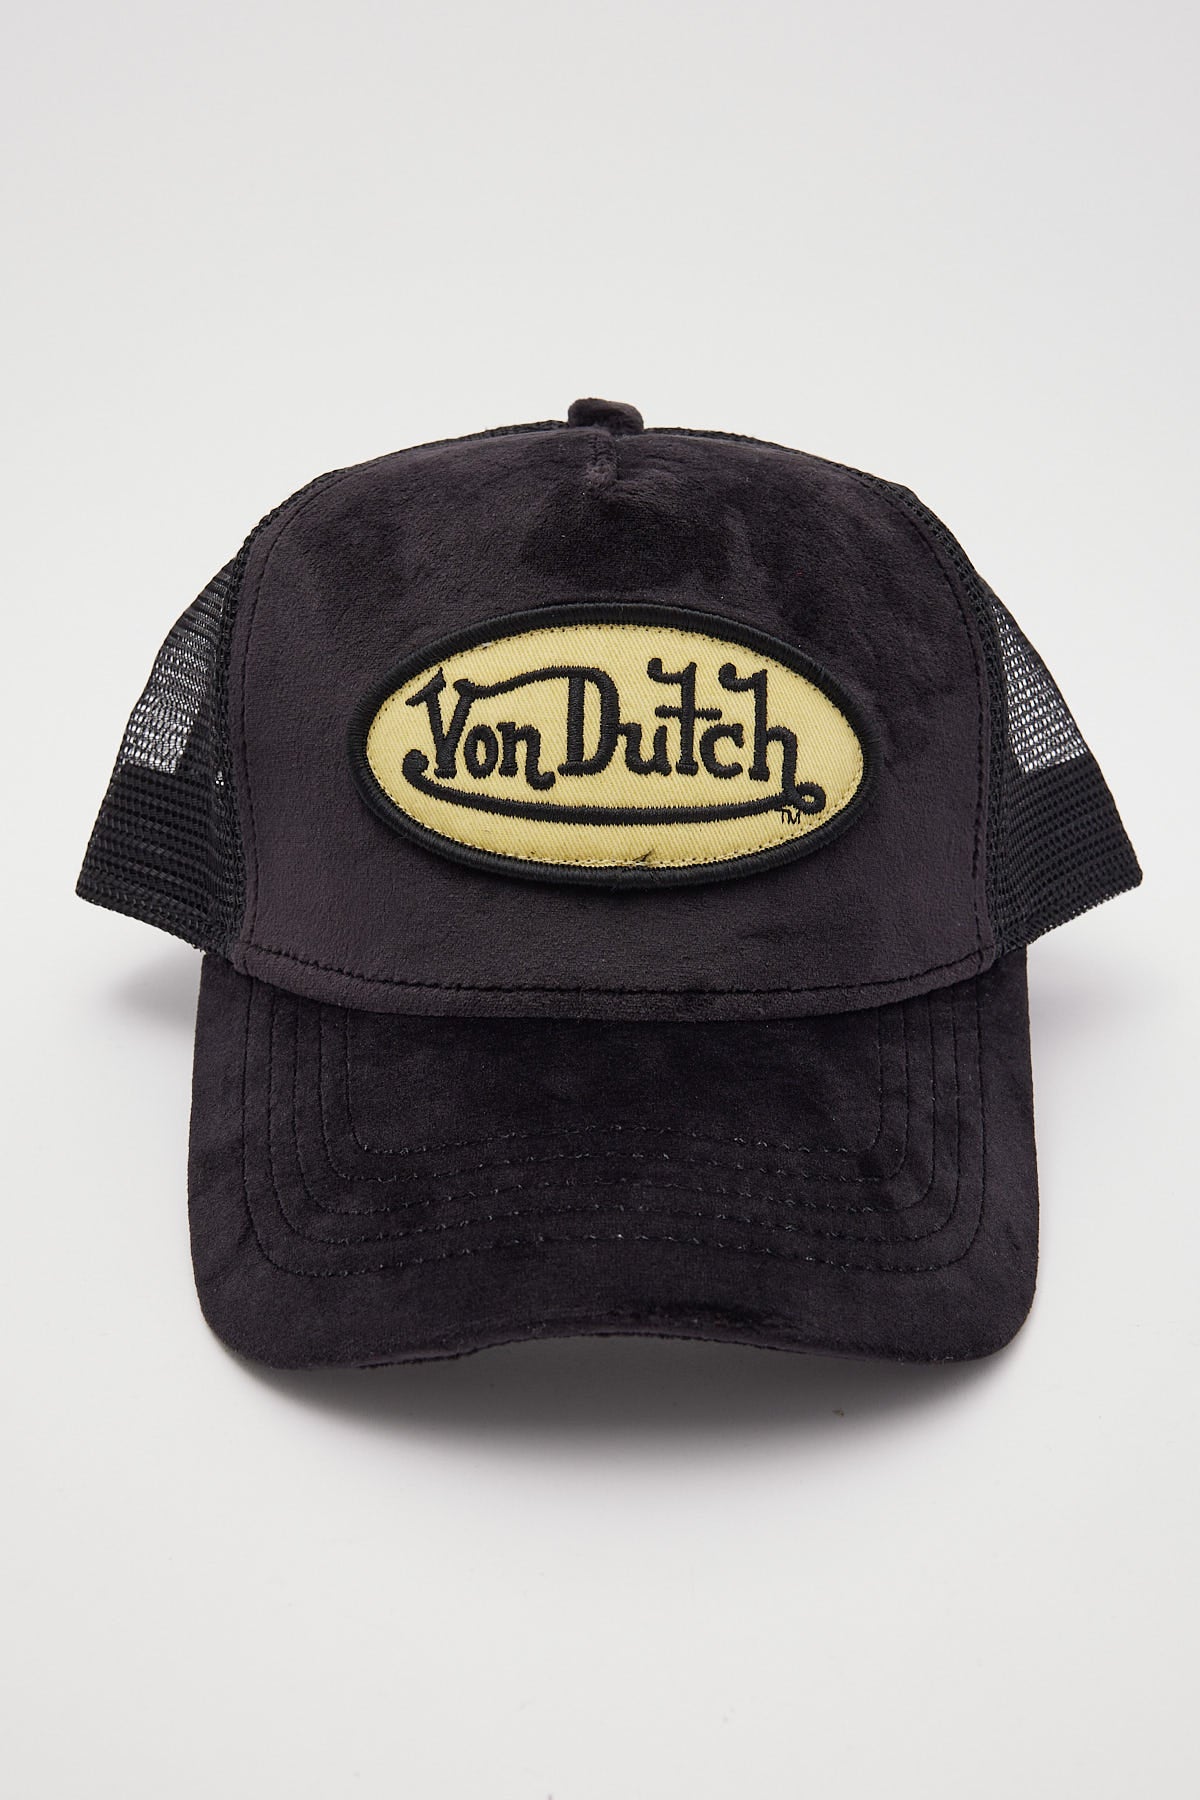 Von Dutch Black Velvet Trucker Black